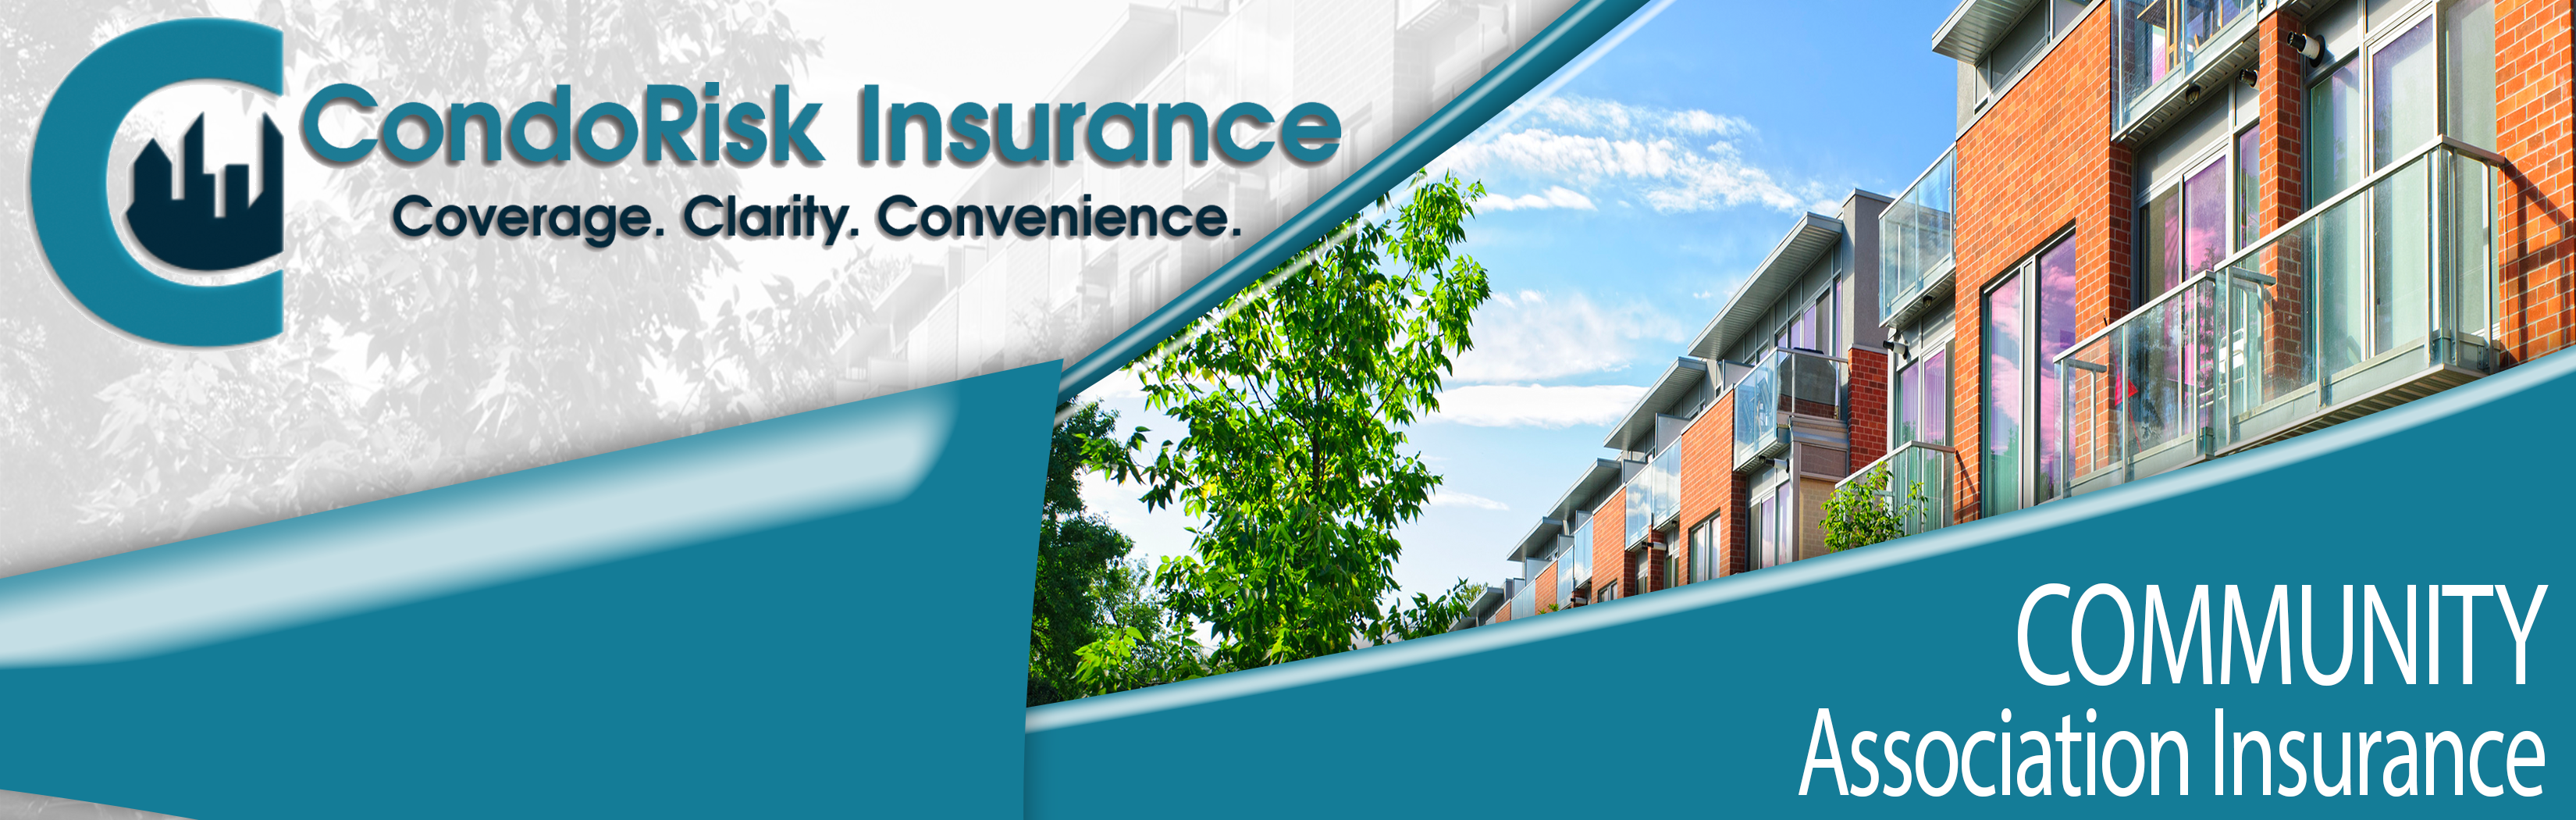 CondoRisk Insurance